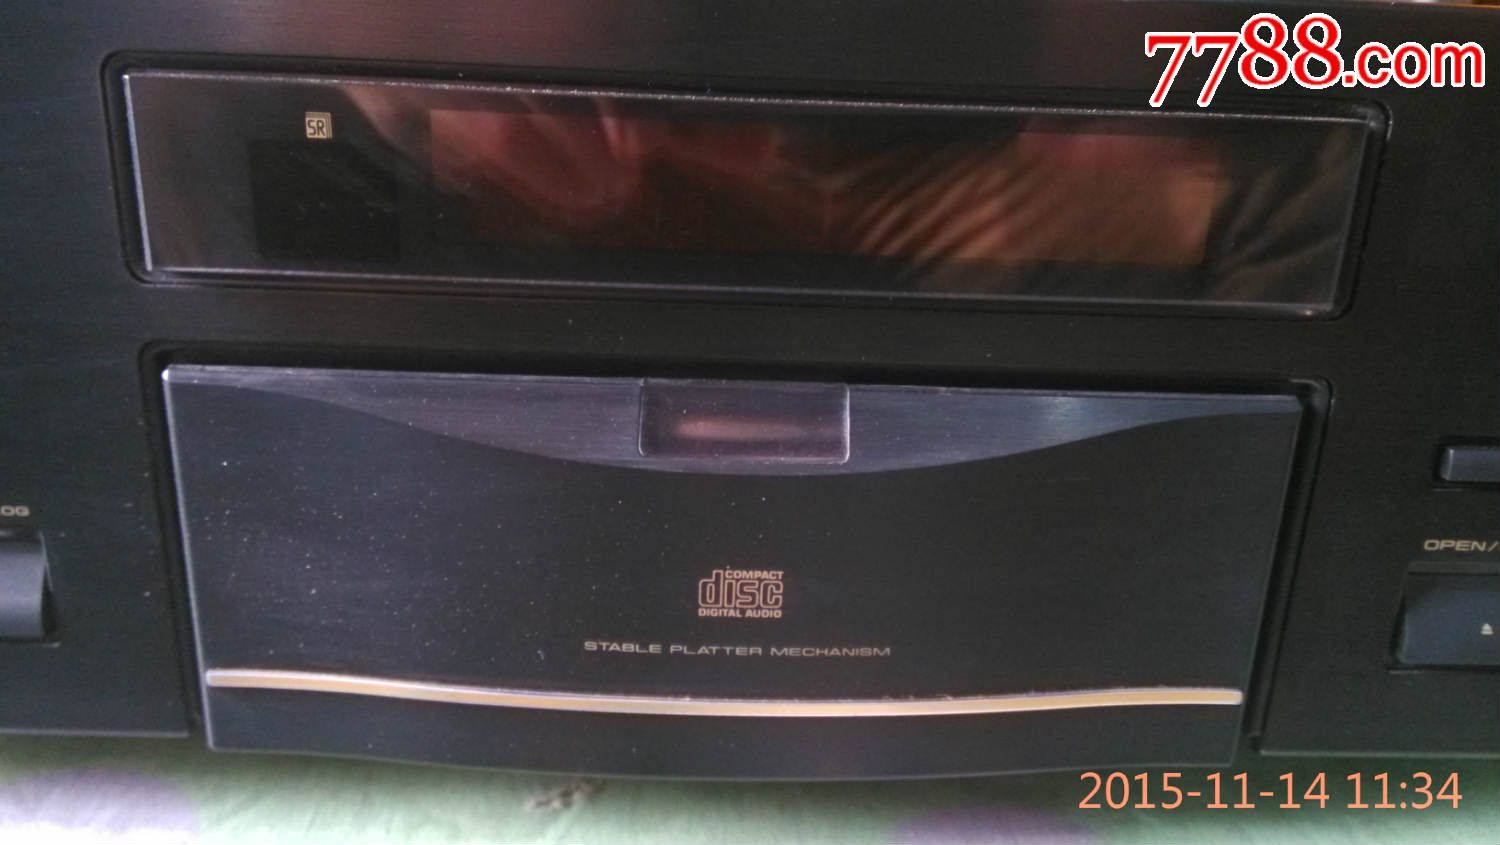 先锋顶级发烧CD机型号PD-9700-录像机\/影碟